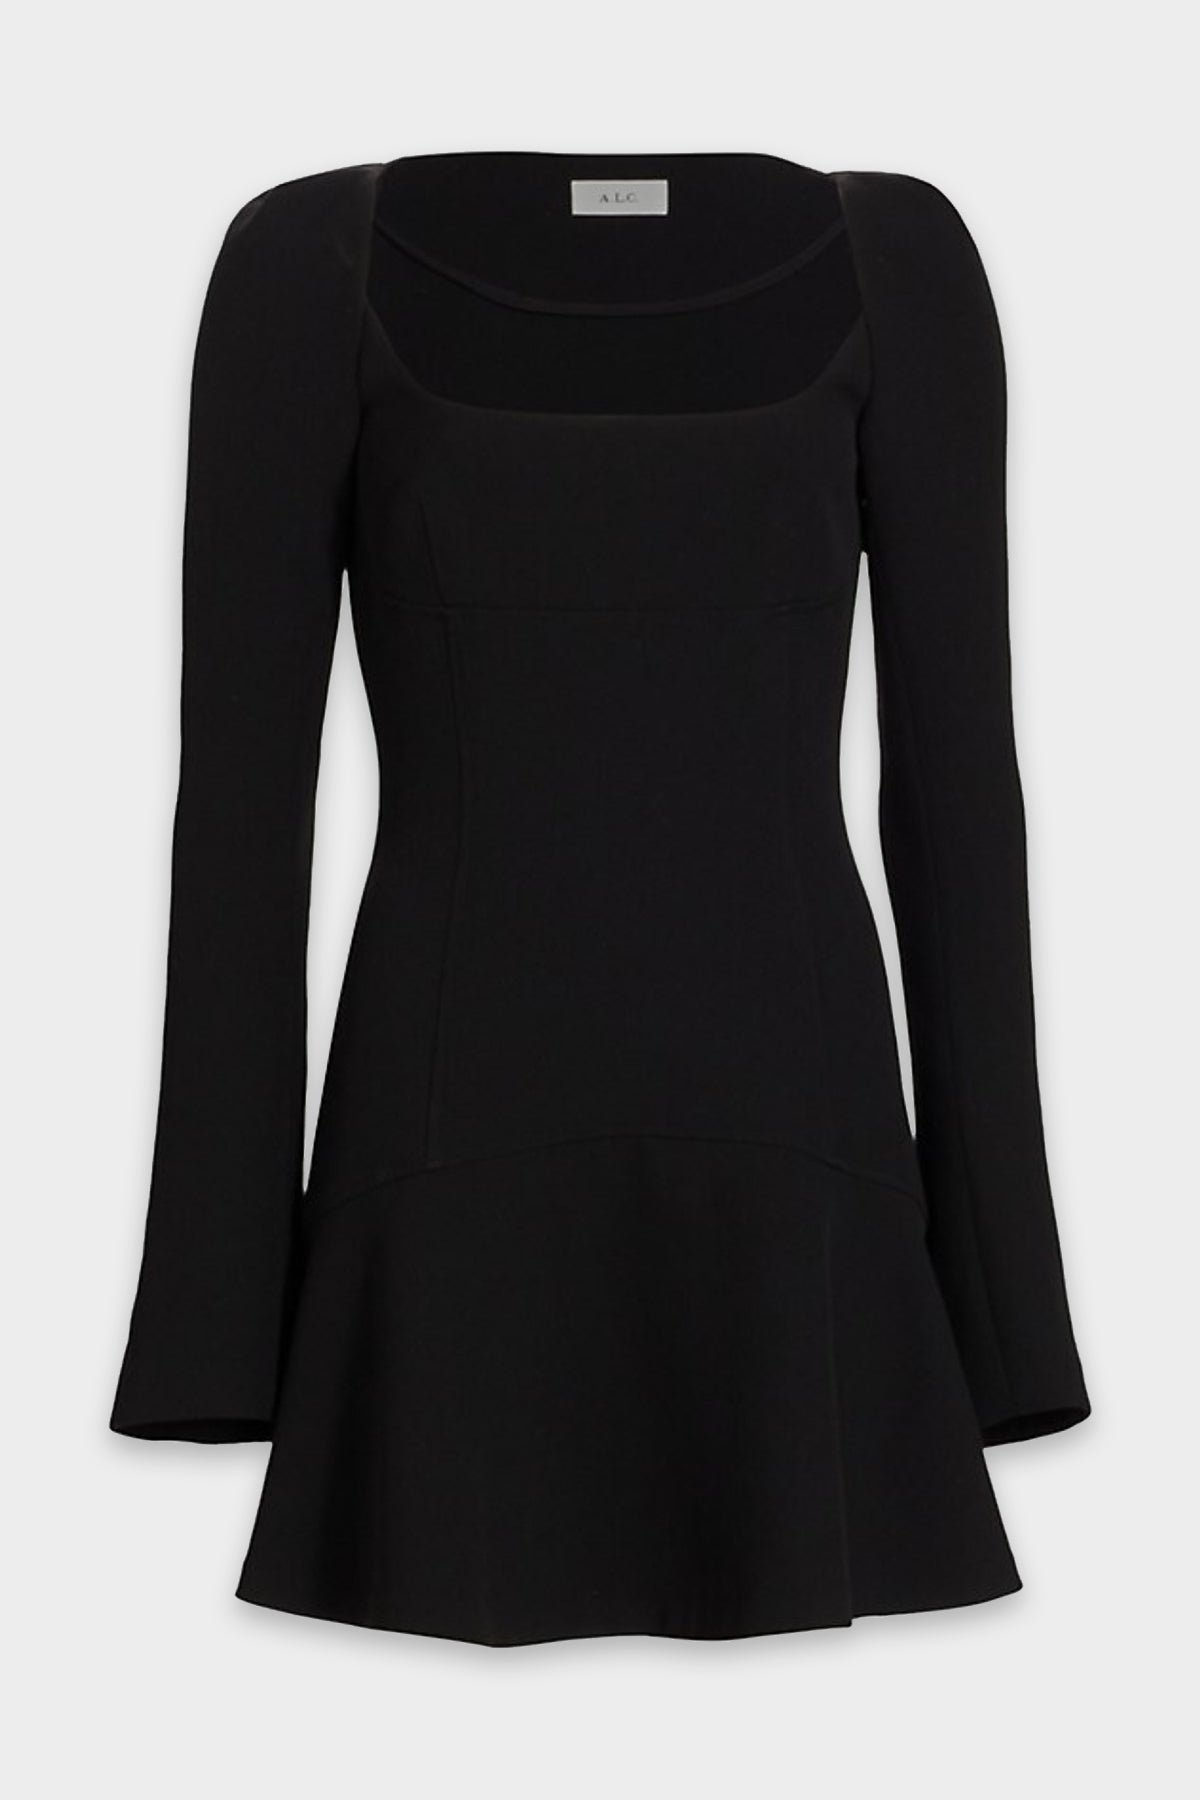 Heidi Mini Dress in Black - shop-olivia.com